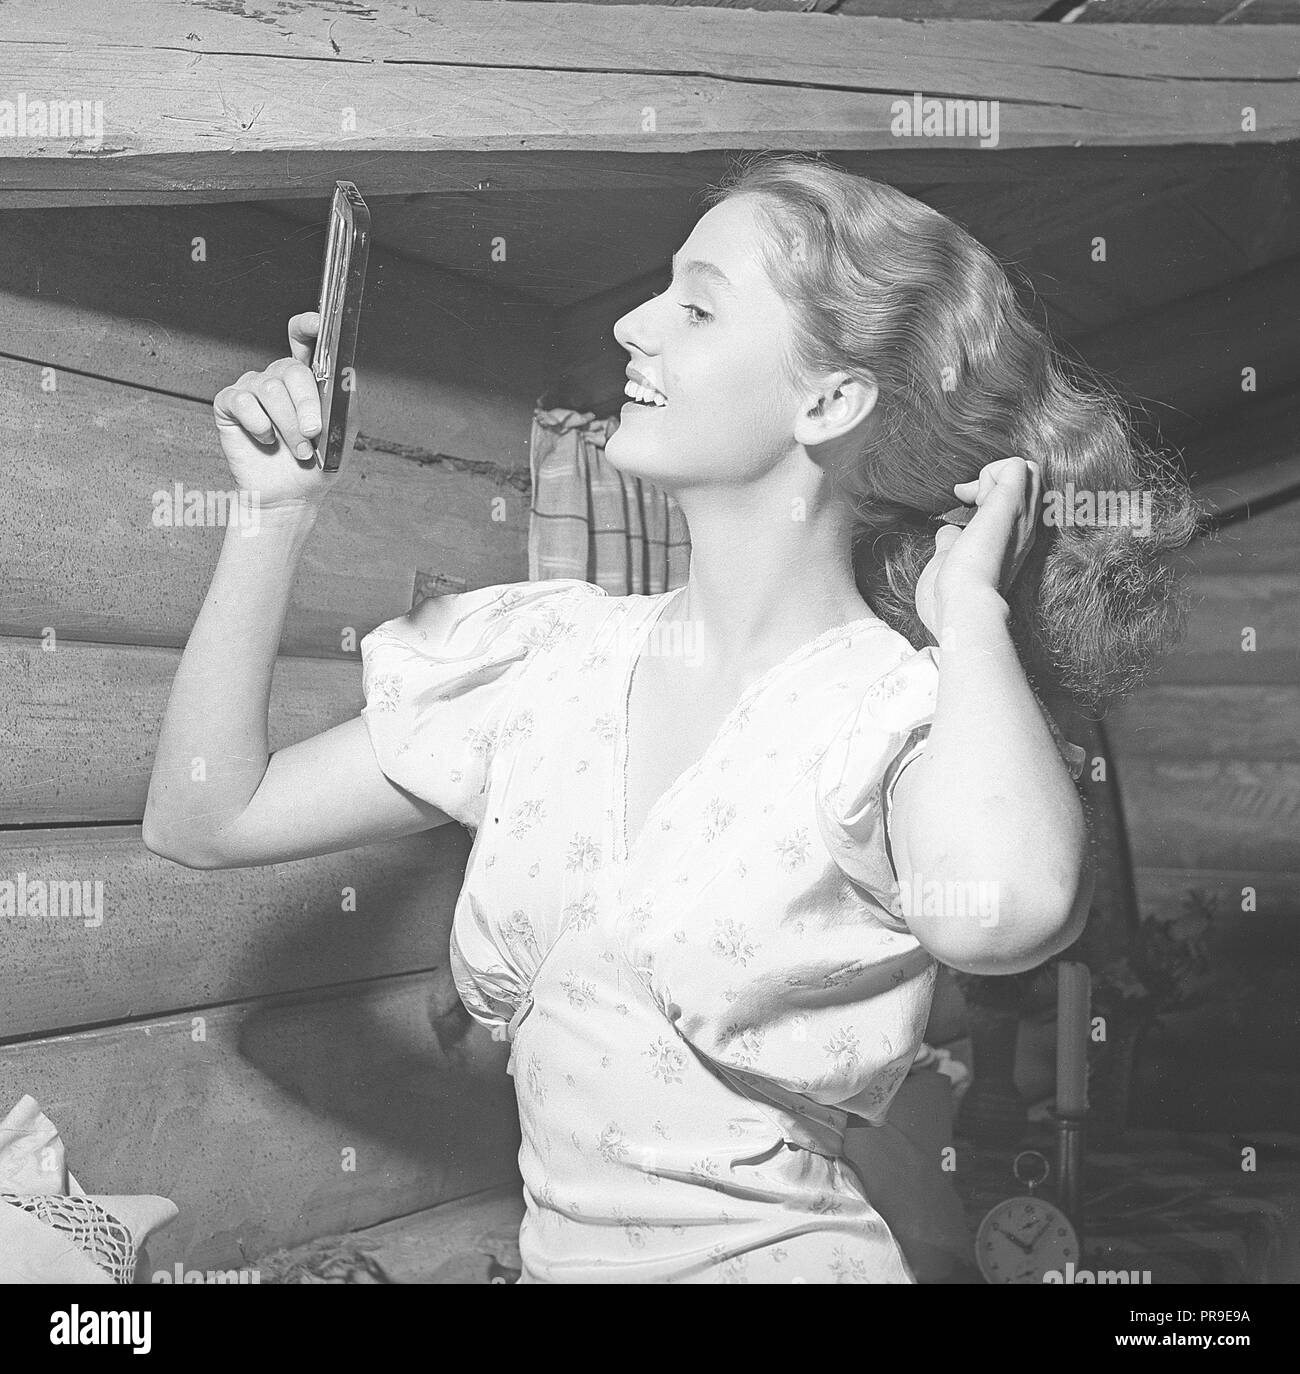 Donna che fissa i capelli negli anni '1940s. Una giovane donna bionda si guarda in uno specchio da tasca mentre pettina i capelli. Svezia 1945. Foto Kristoffersson Ref P146-4 Foto Stock